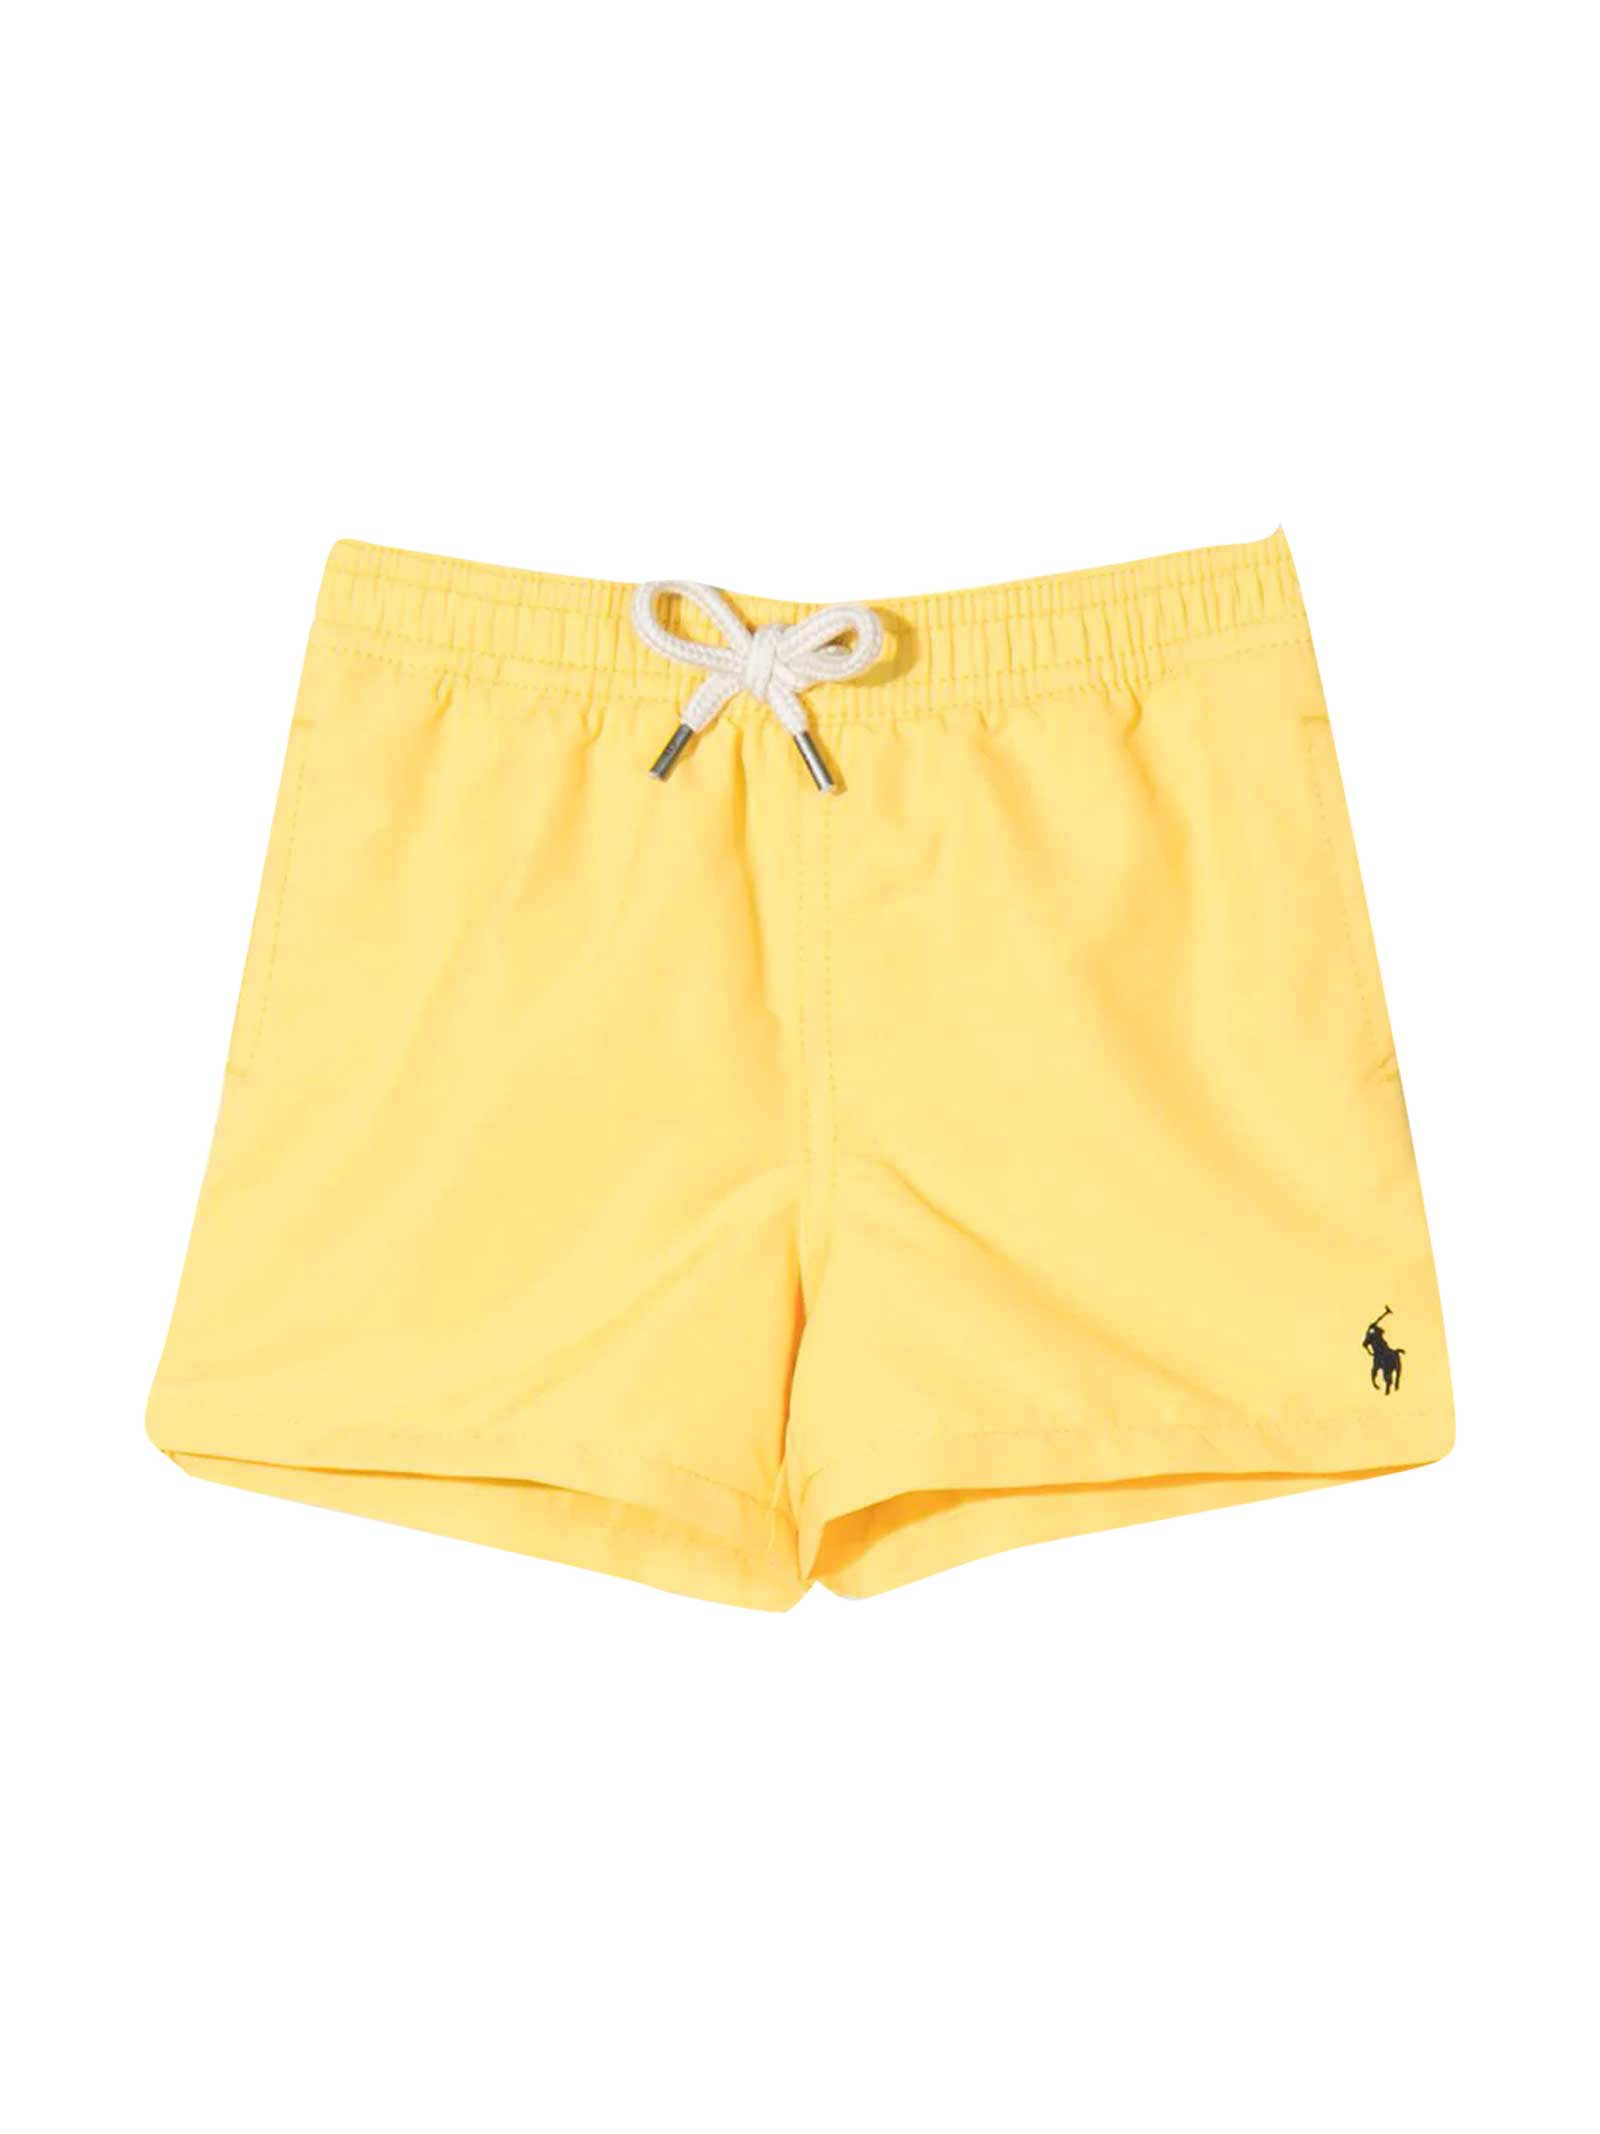 Ralph Lauren Yellow Swimsuit